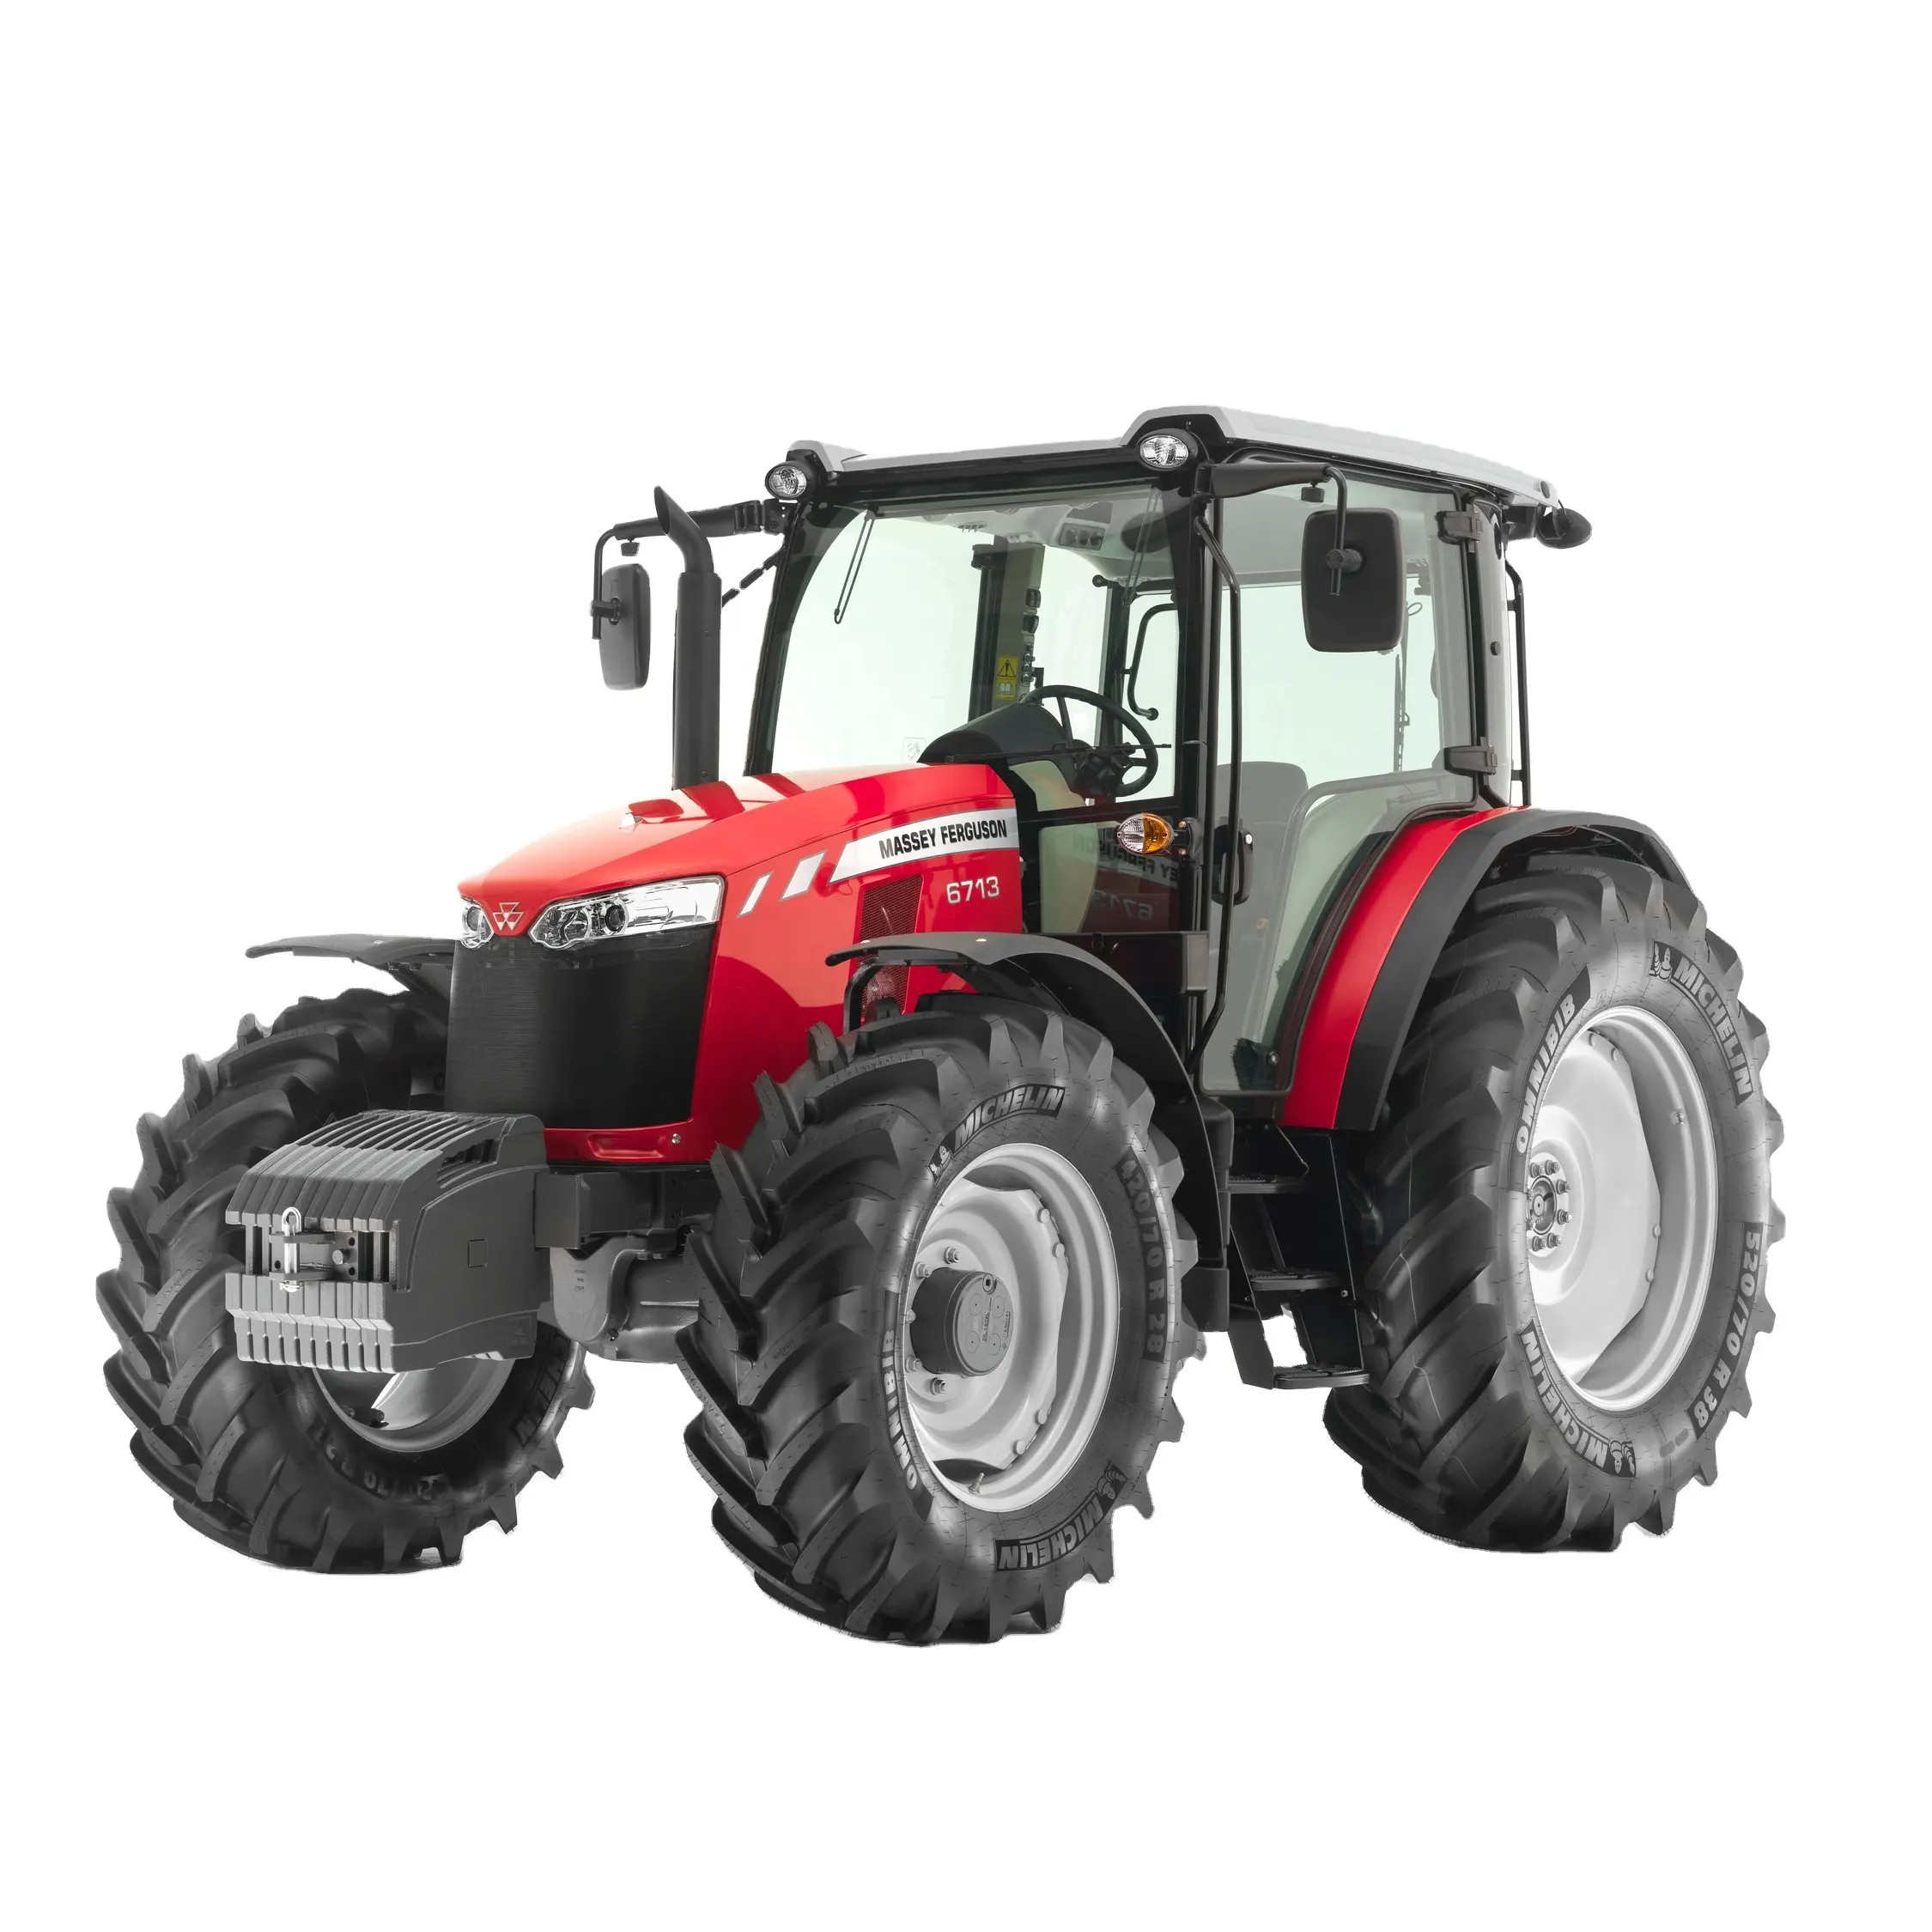 Günstiger Preis Massey Ferguson Traktor MF 390 und MF 455 Extra Landwirtschaft maschine Ackers chlepper Ersatzteile Traktor